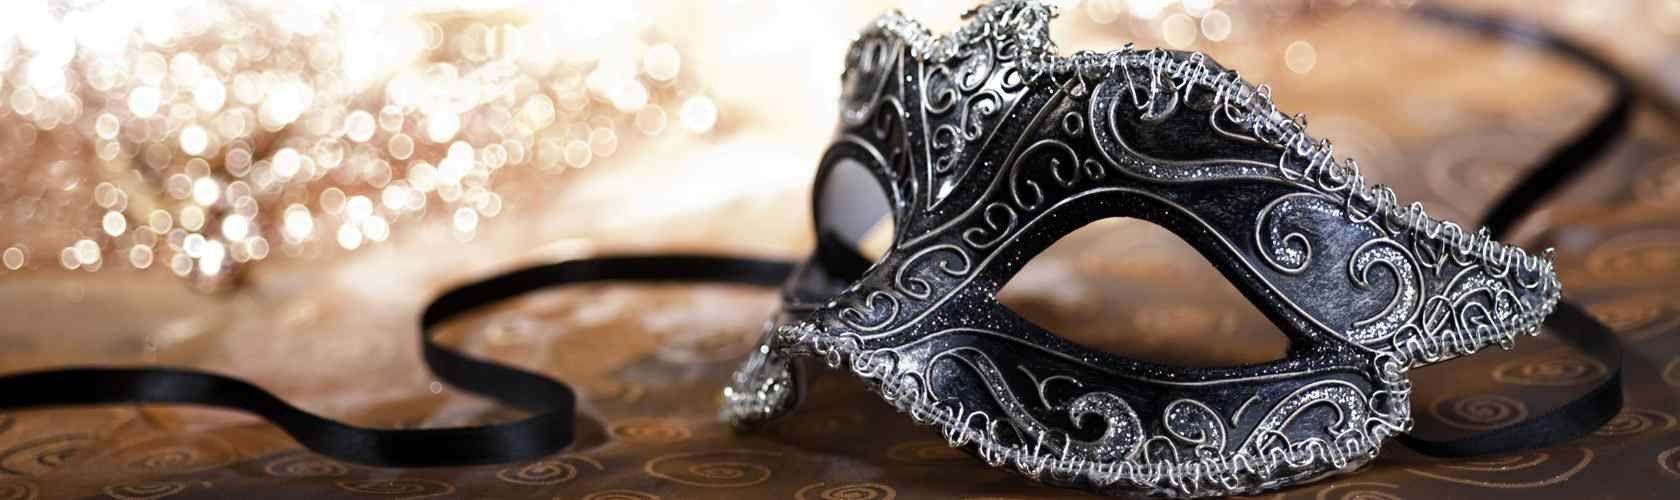 masquerade wallpaper for facebook. ololoshenka. Carnival masks